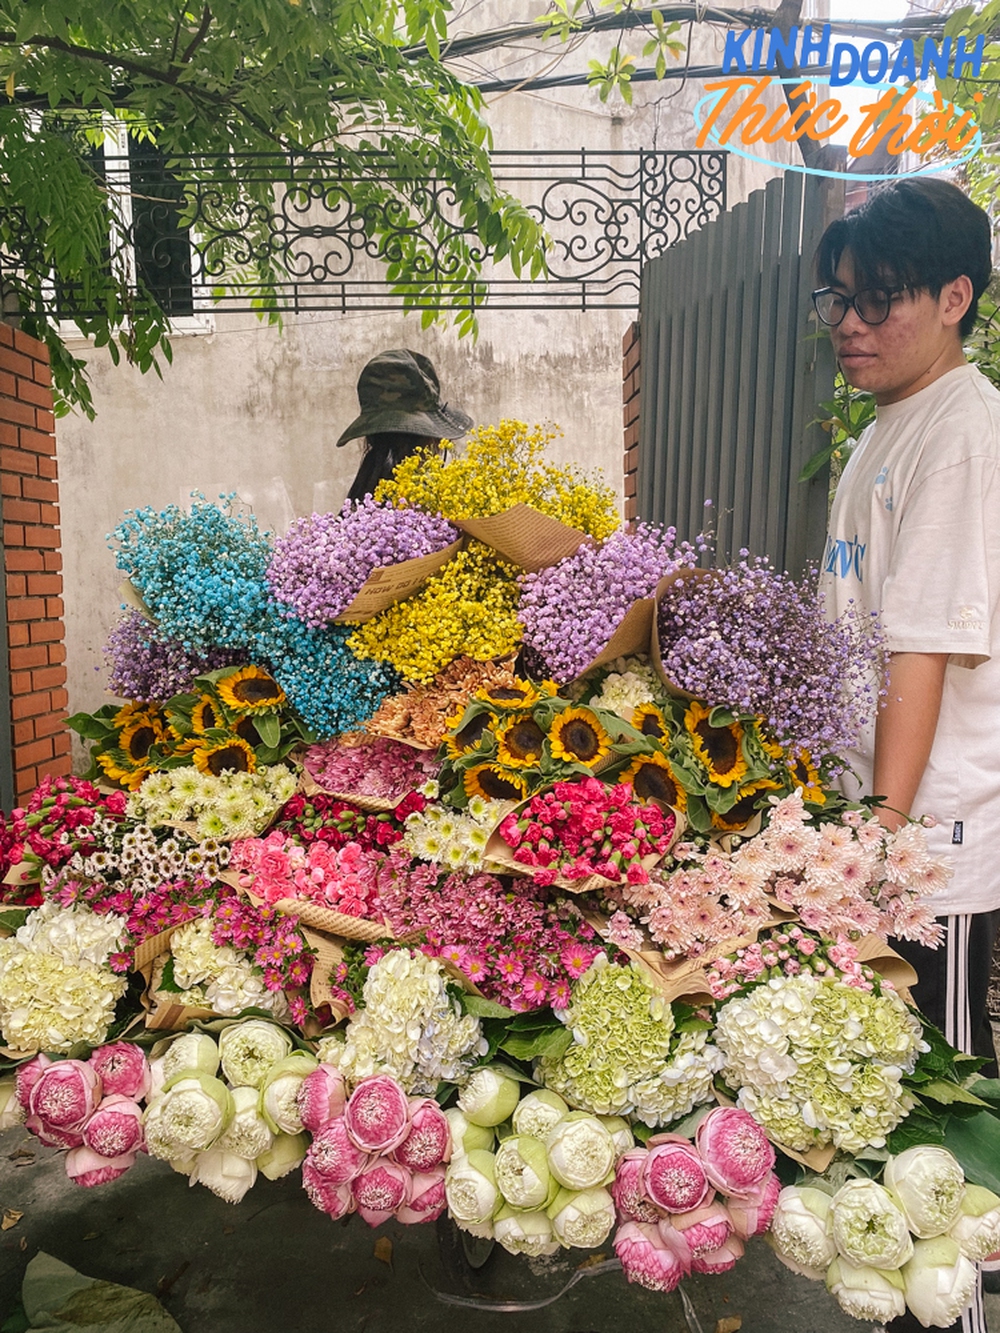 Gánh hoa đặc trưng của đường phố Hà Nội không ngờ lại mang tới cơ hội kiếm cả triệu mỗi ngày cho người dân thành phố khác - Ảnh 3.